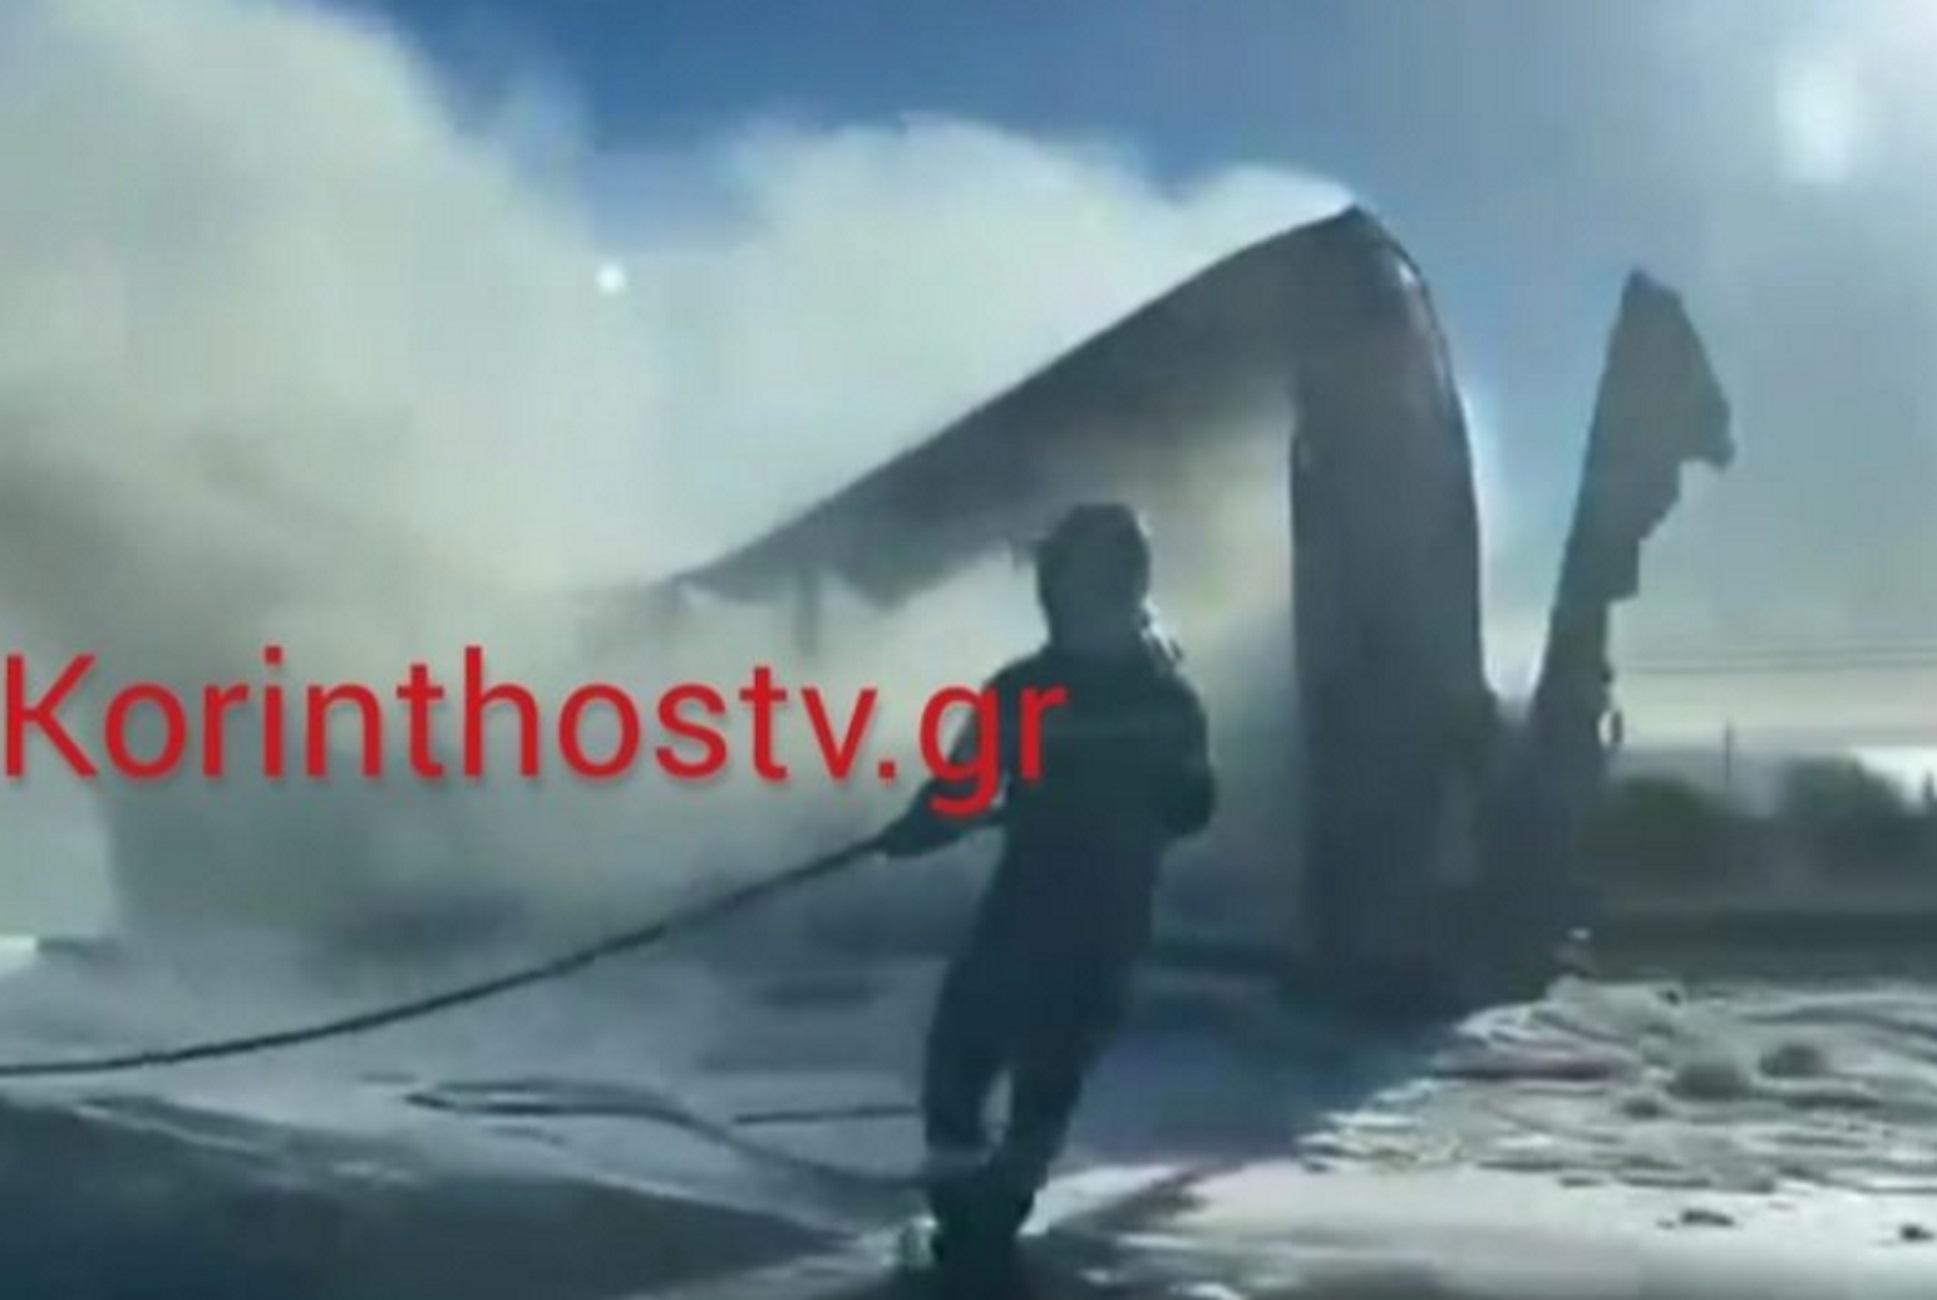 Εθνική οδός Αθηνών – Κορίνθου: Εικόνες από τη φωτιά σε νταλίκα που προκάλεσε μποτιλιάρισμα